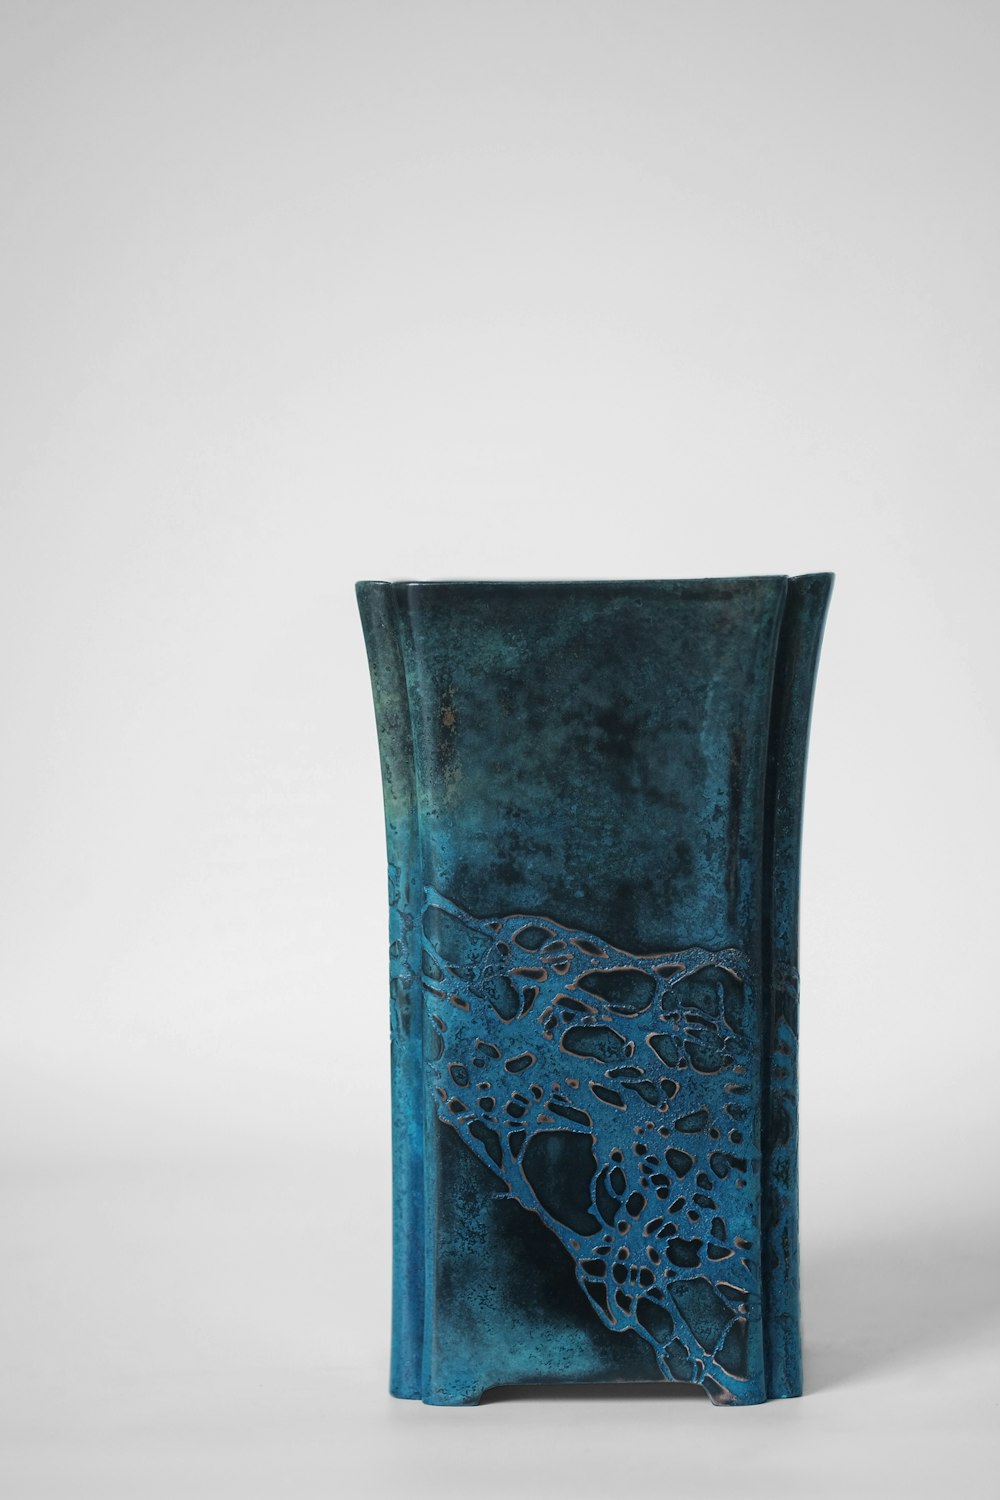 blue and black floral vase